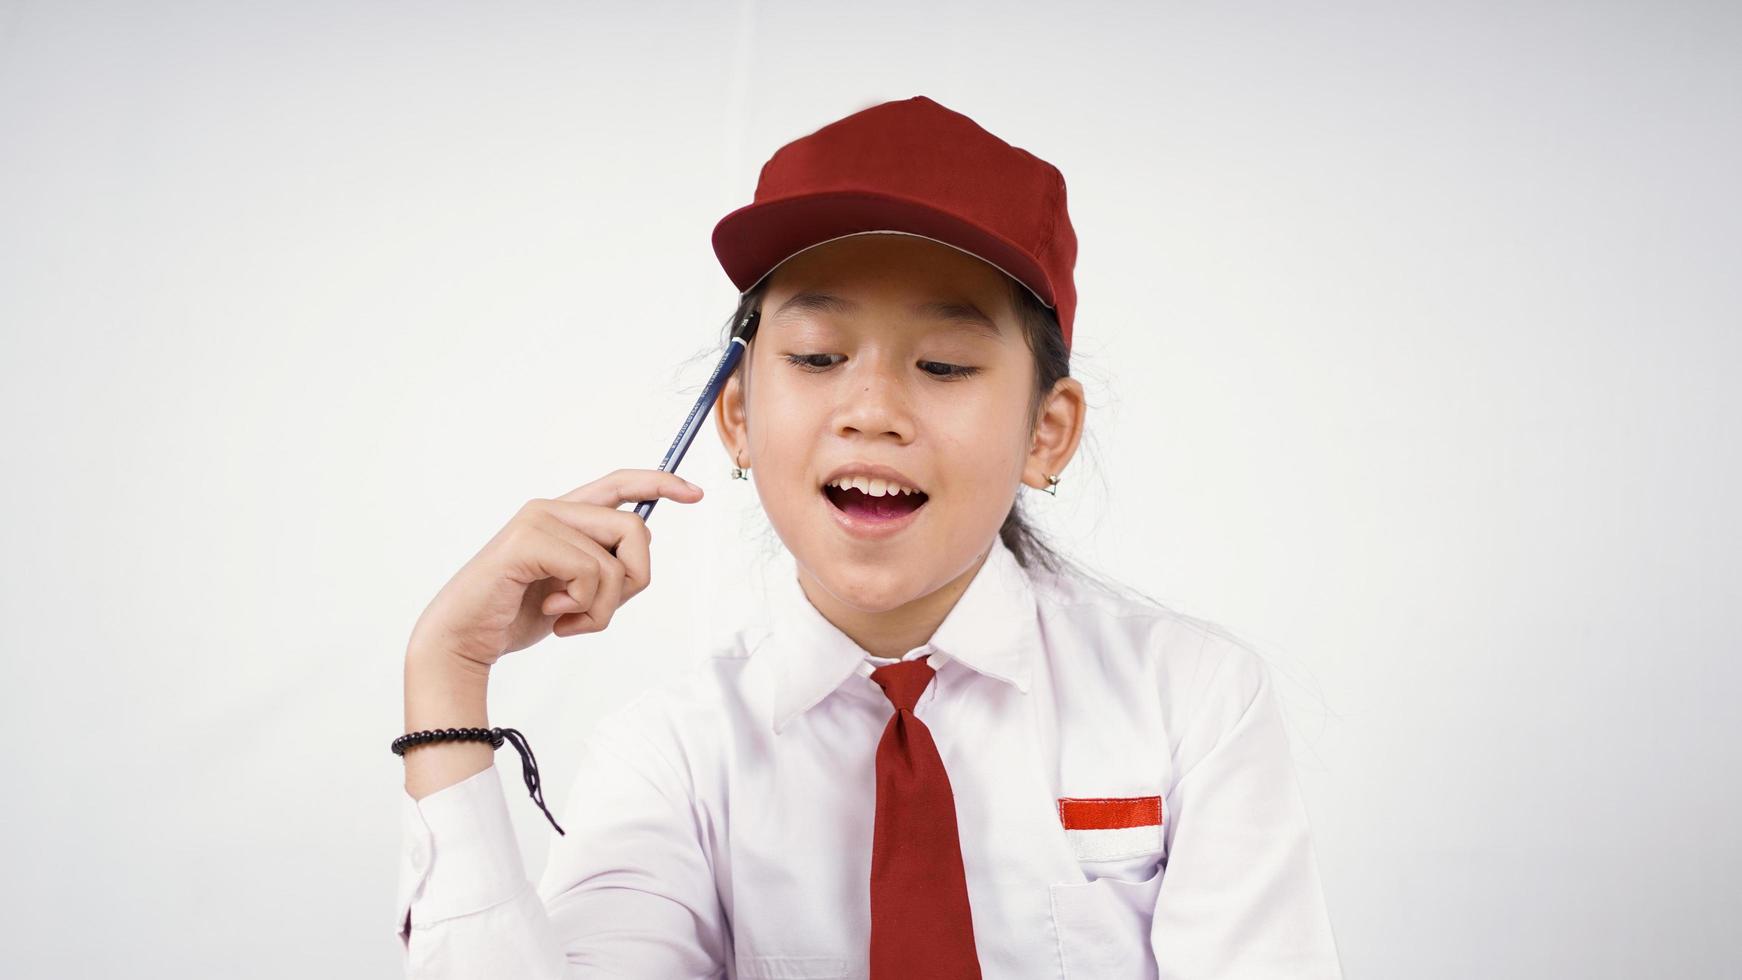 Grundschule asiatisches Mädchen findet interessante Idee isoliert auf weißem Hintergrund foto